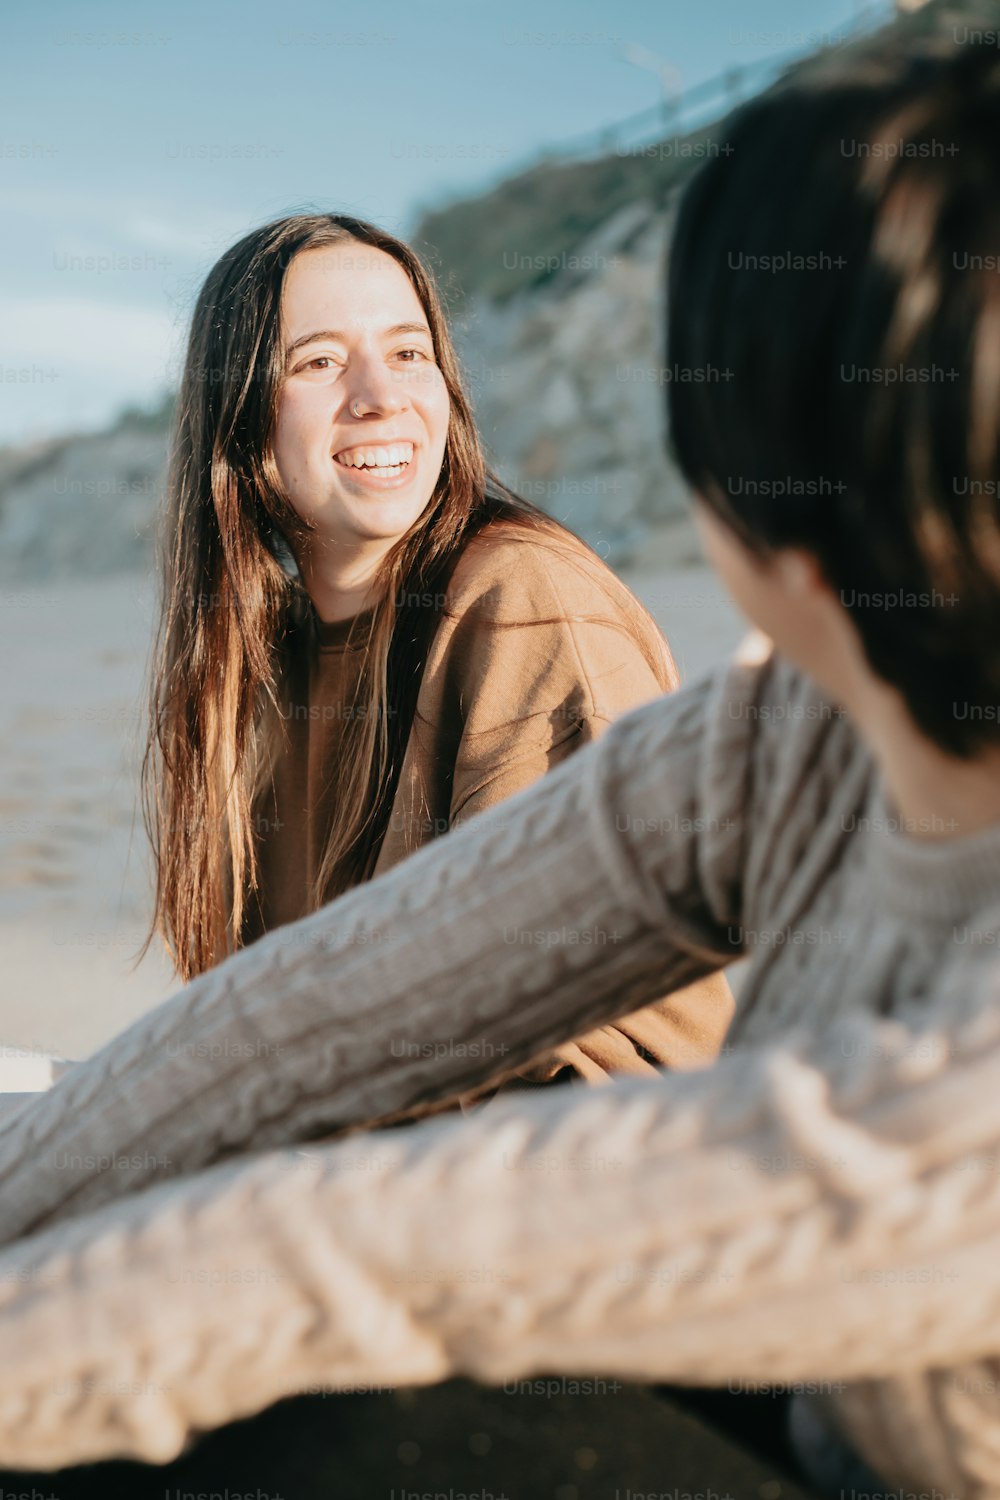 Eine Frau, die neben einer anderen Frau am Strand sitzt